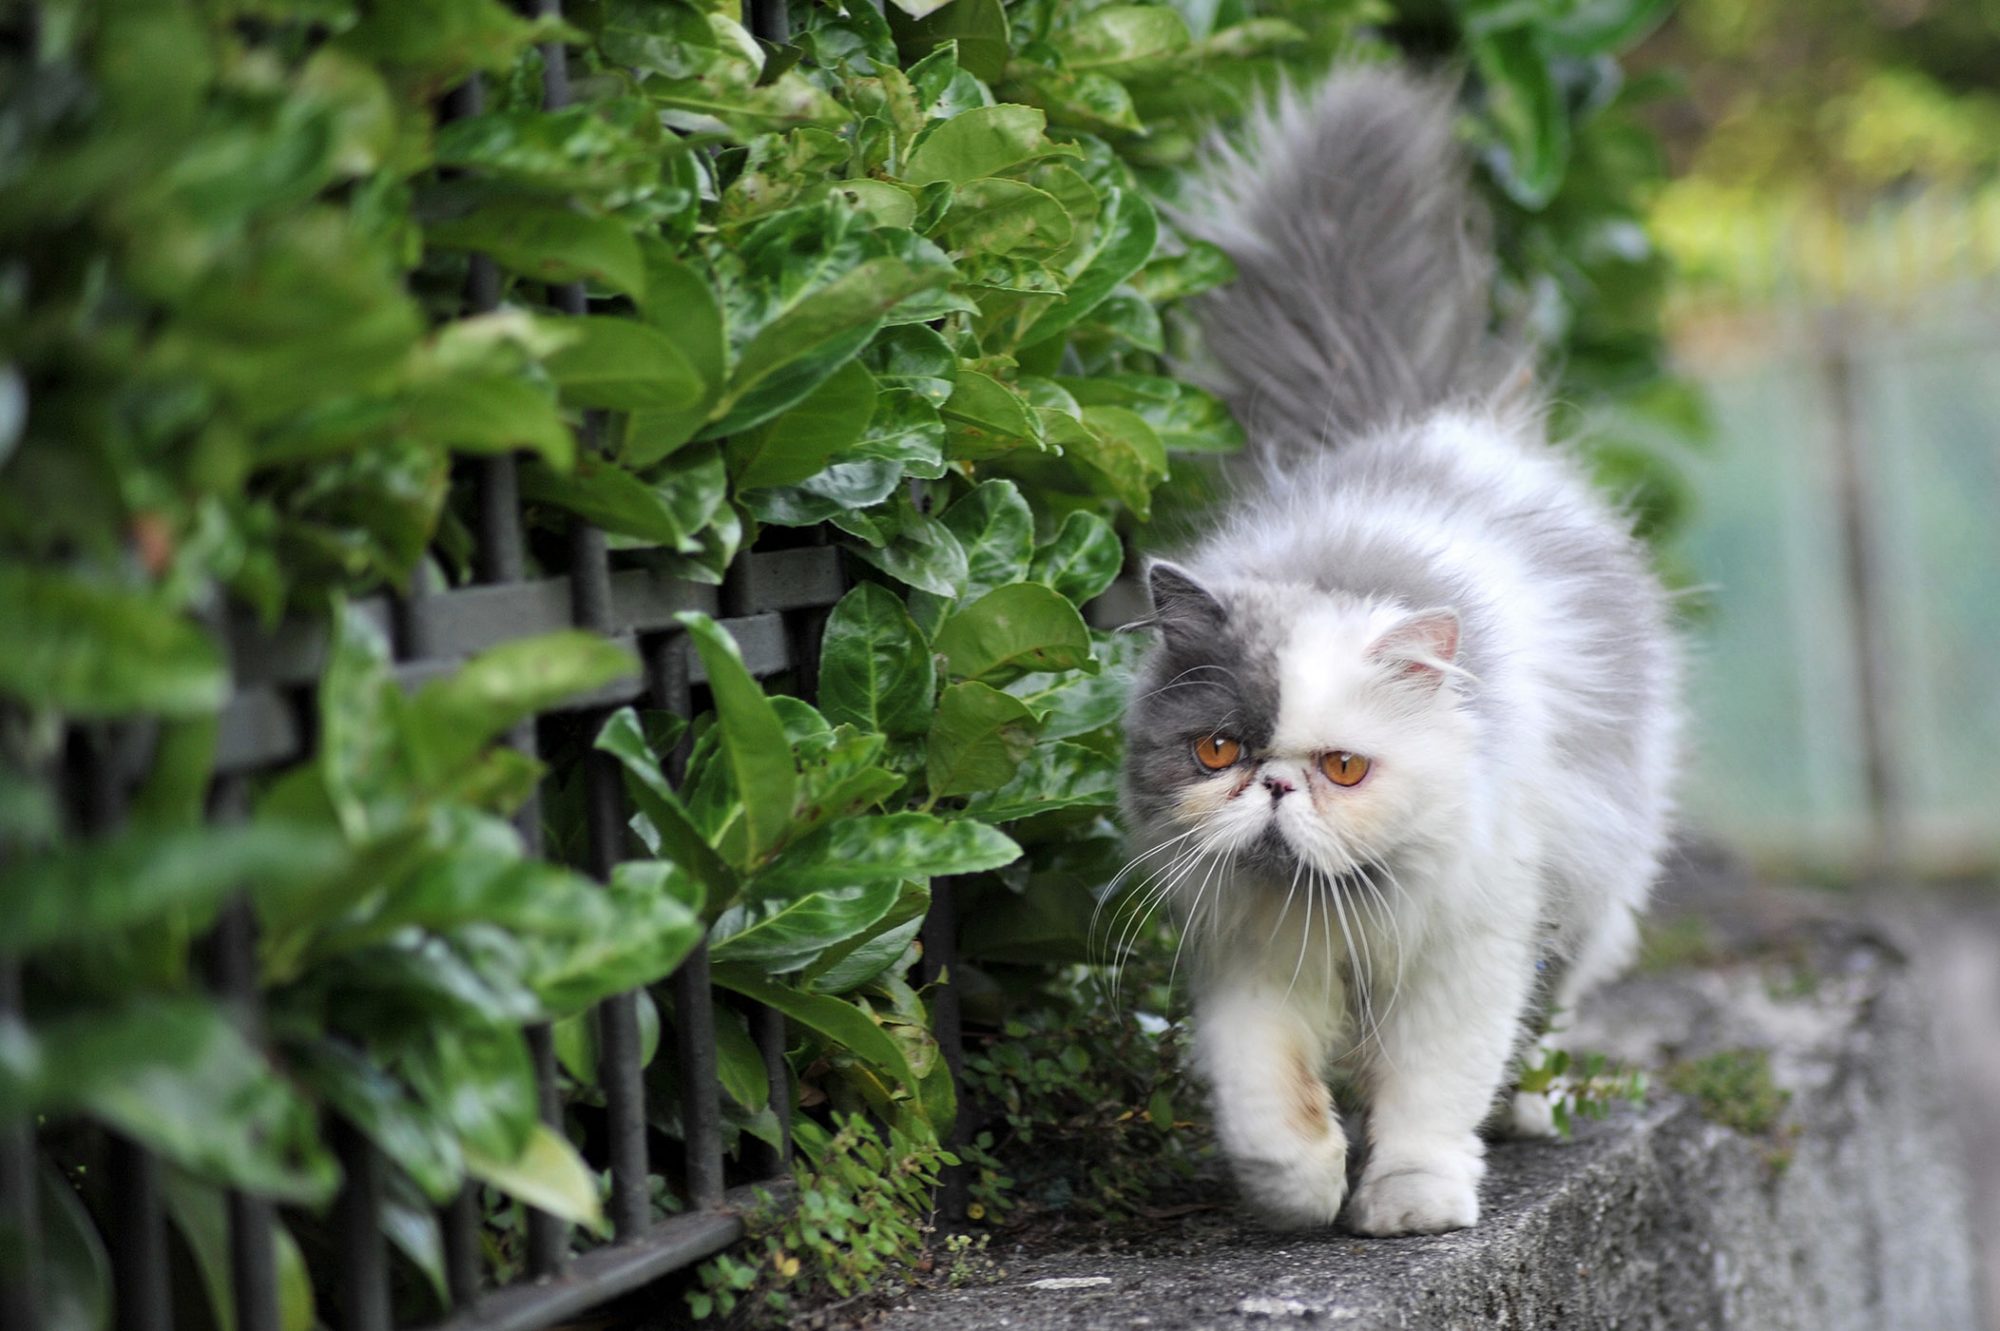 Trong cỏ có chứa Axit folic - vitamin thiết yếu giúp cơ thể mèo sản xuất Hemoglobin, giúp vận chuyển oxi trong máu